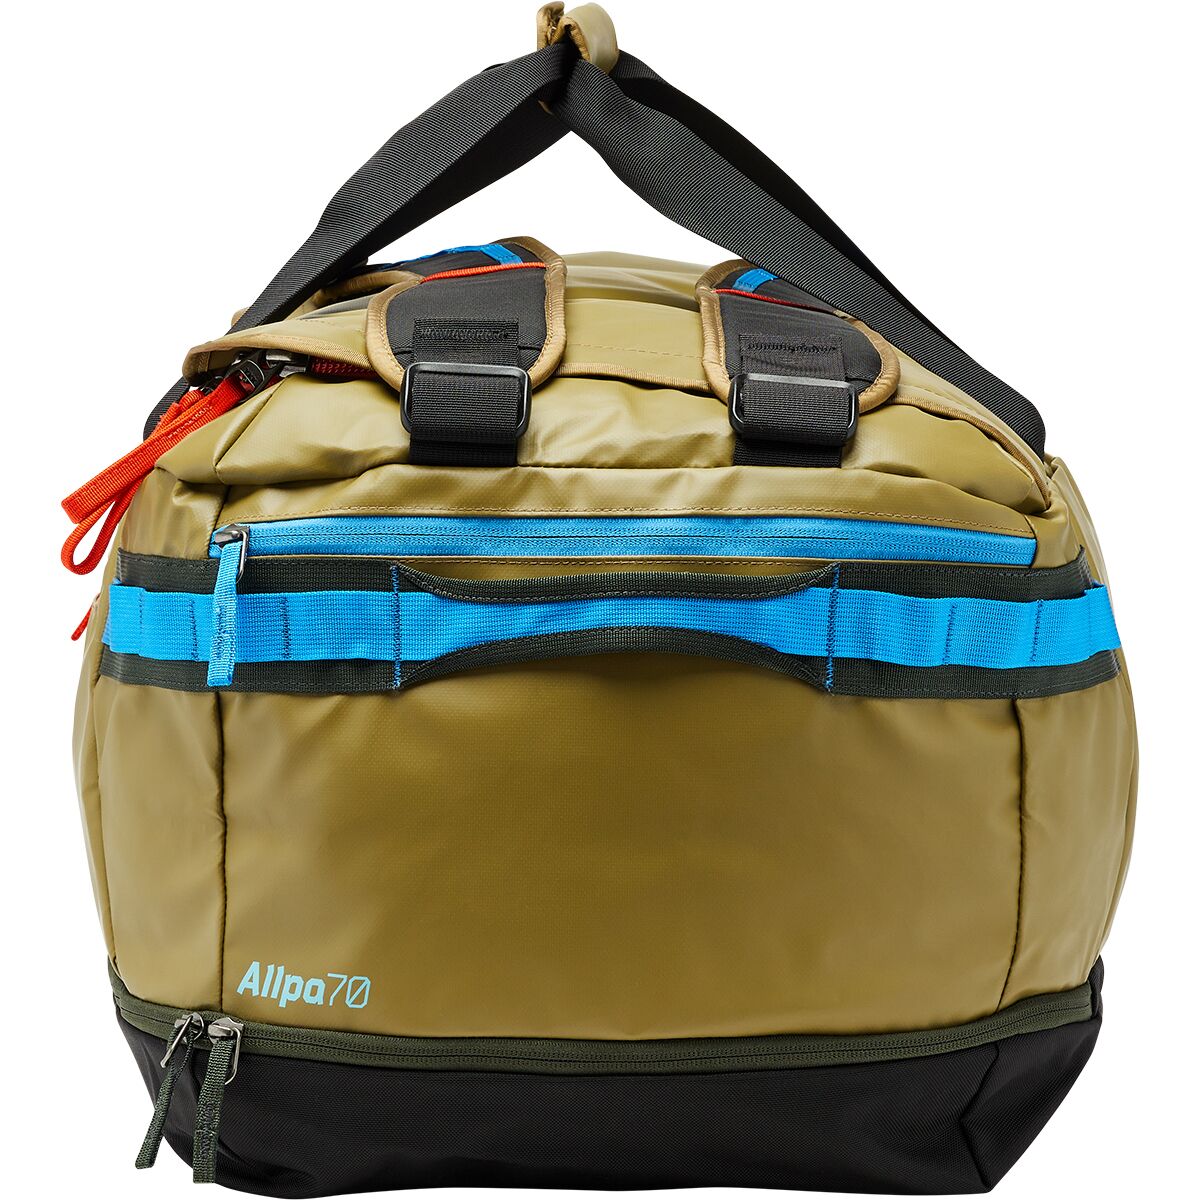 Allpa 70L Duffel Bag – Cotopaxi